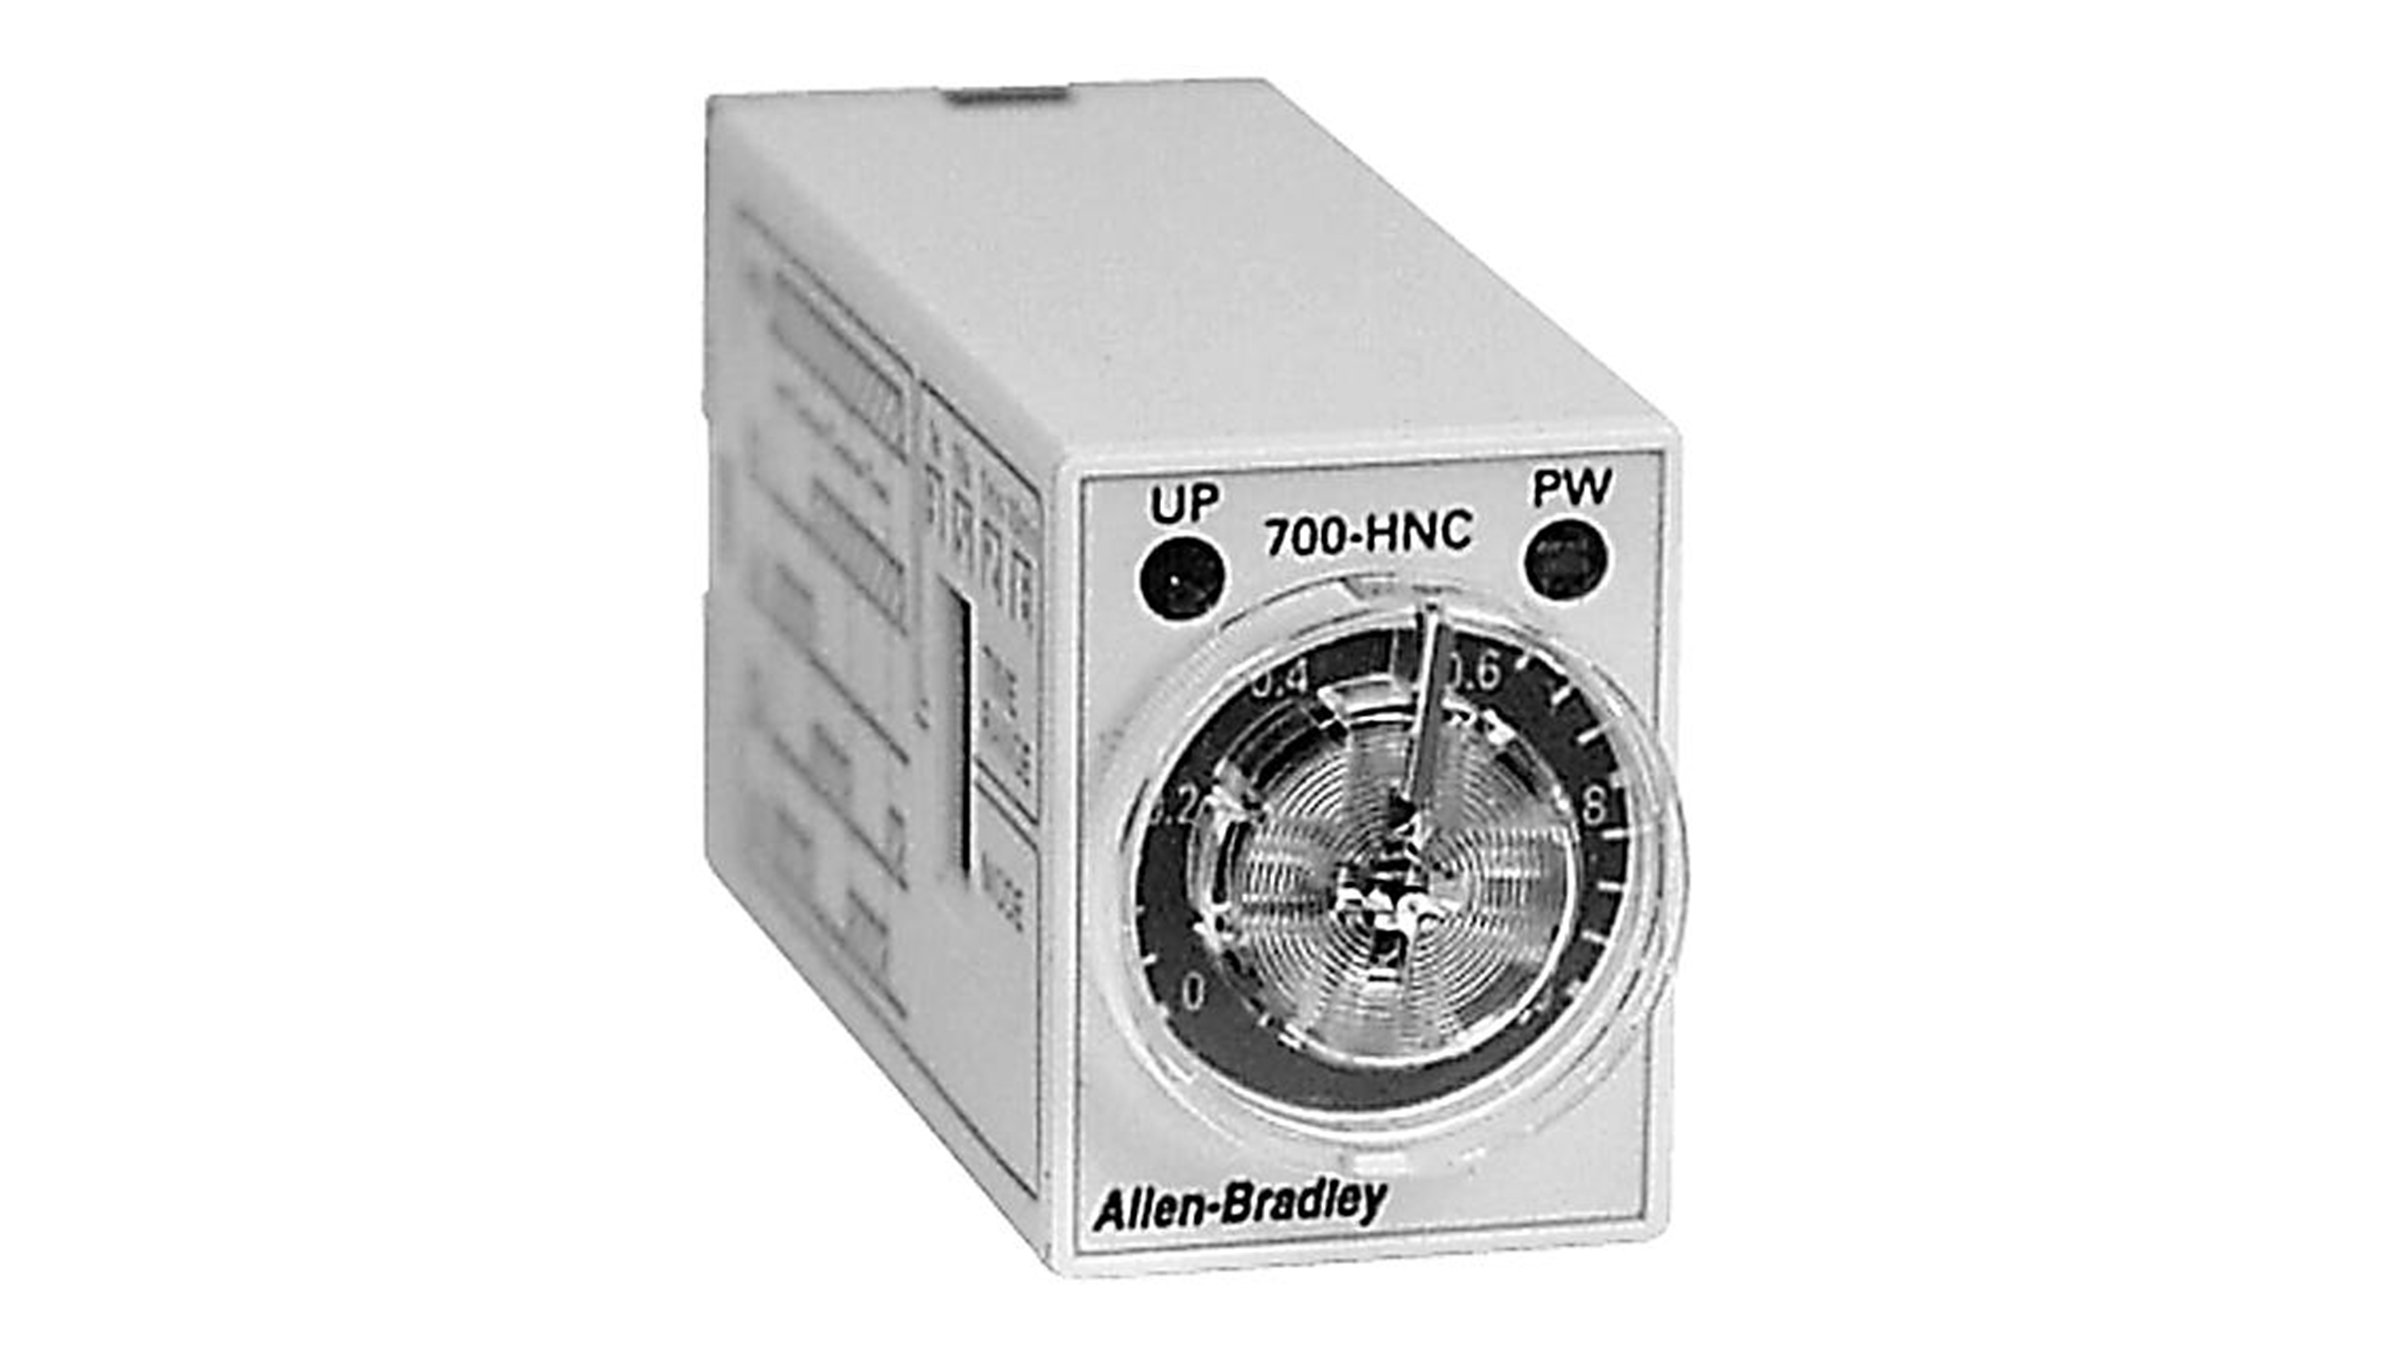 Les relais temporisés miniatures Allen-Bradley, série 700-HNC font partie des plus petits relais temporisés existants.